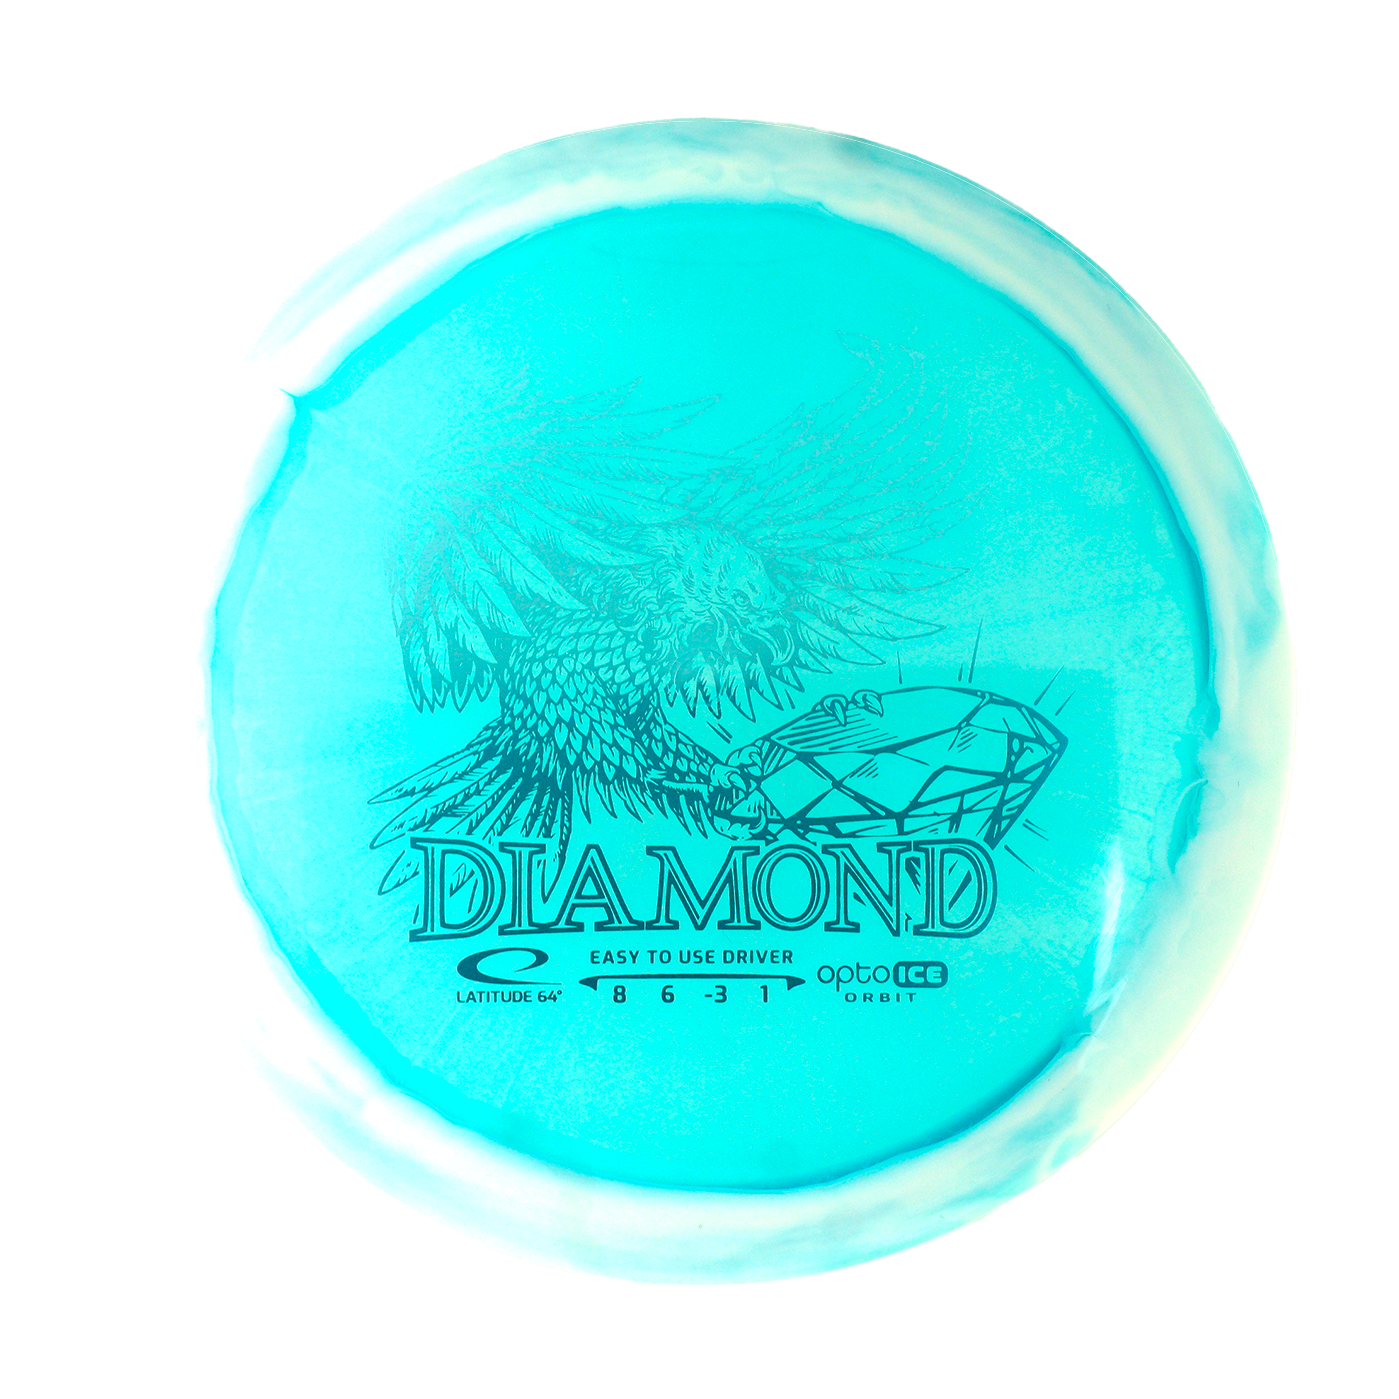 Latitude 64 Opto Ice Diamond